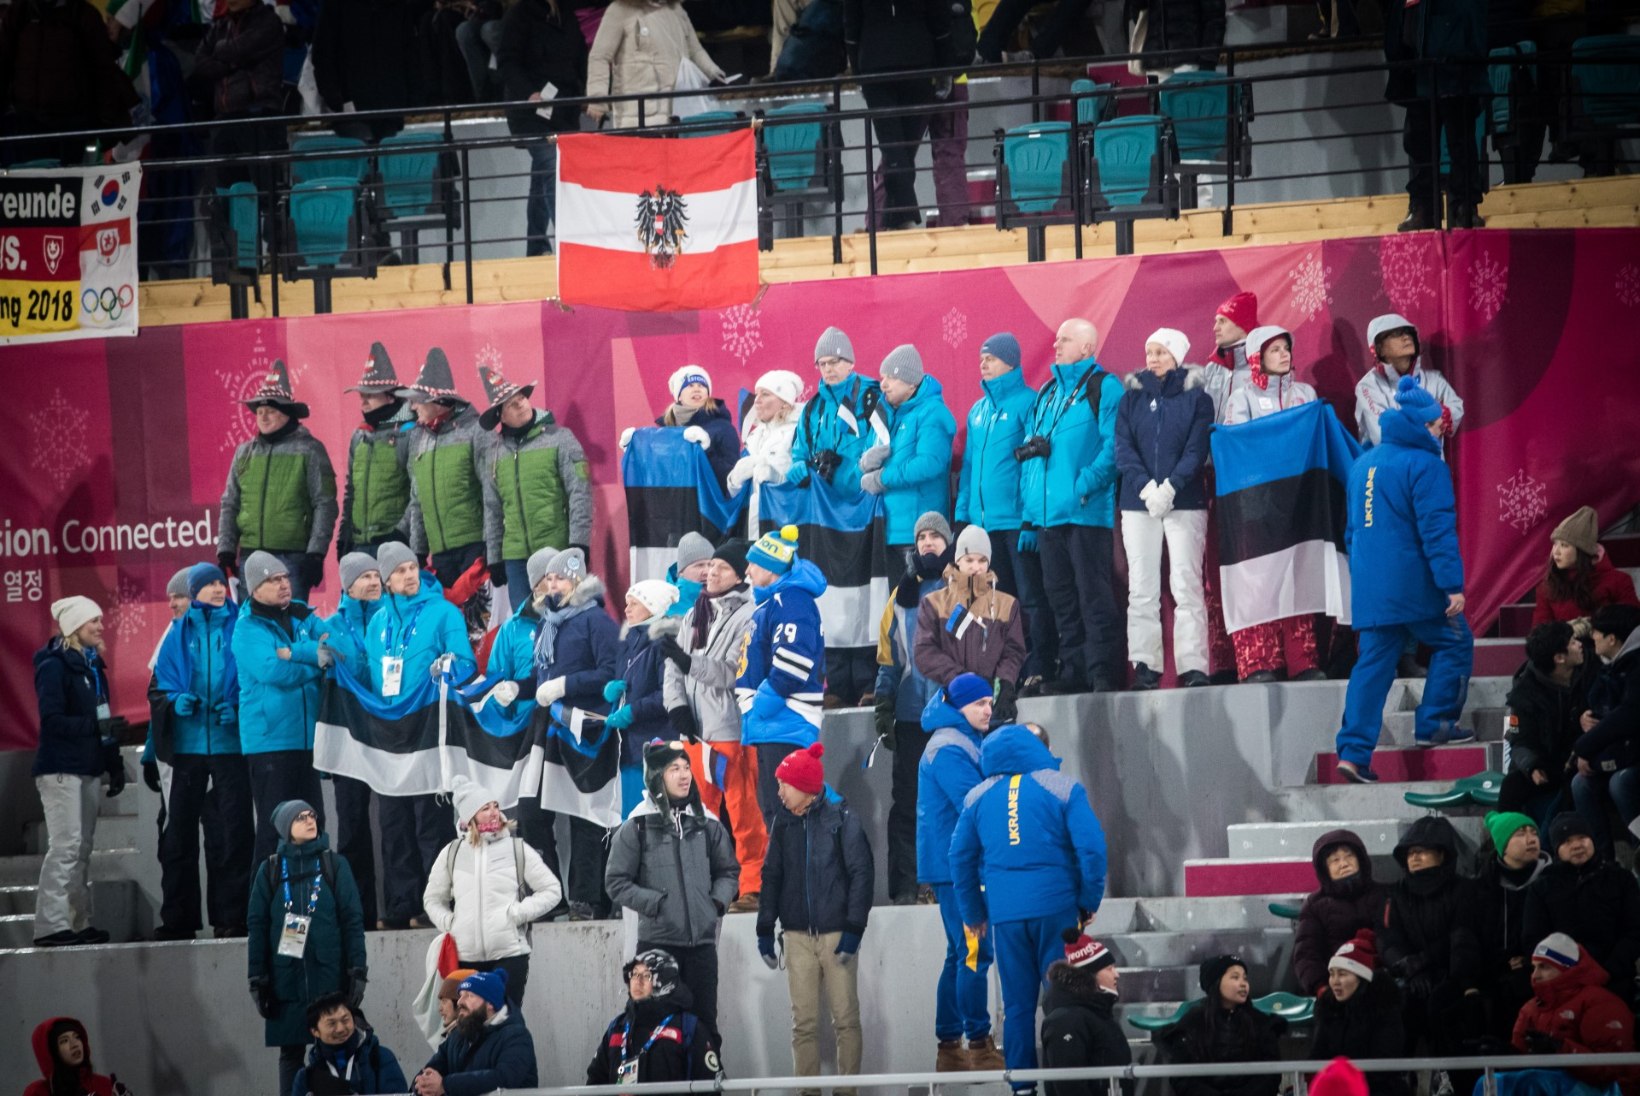 Talimängud jätavad külmaks? Vaata, kui palju osteti Eestist olümpiapileteid võrreldes varasemate aastatega